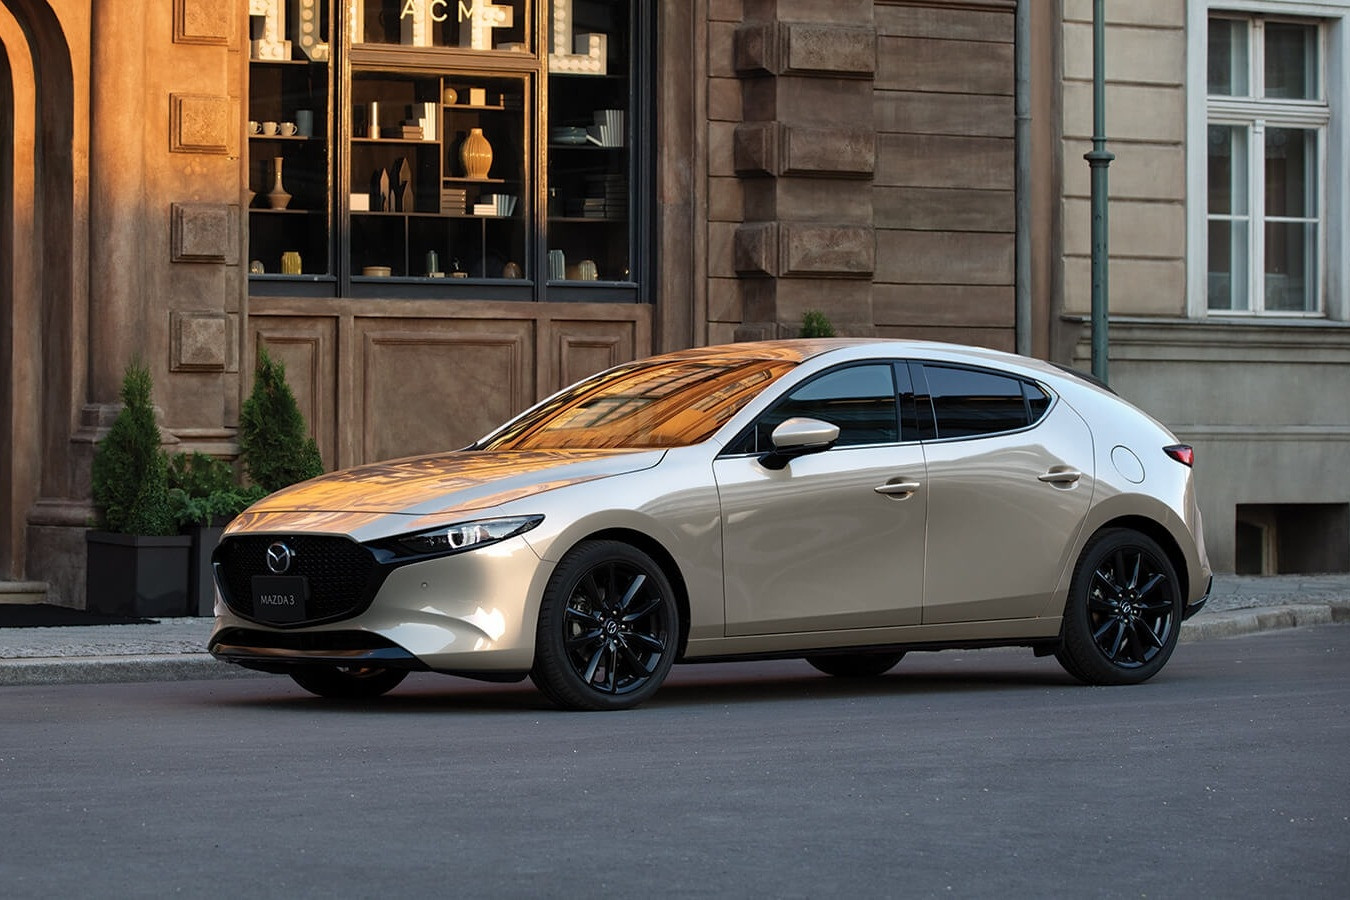 Giá khoảng 600 triệu đồng, Mazda3 phải cạnh tranh với những mẫu xe nào?